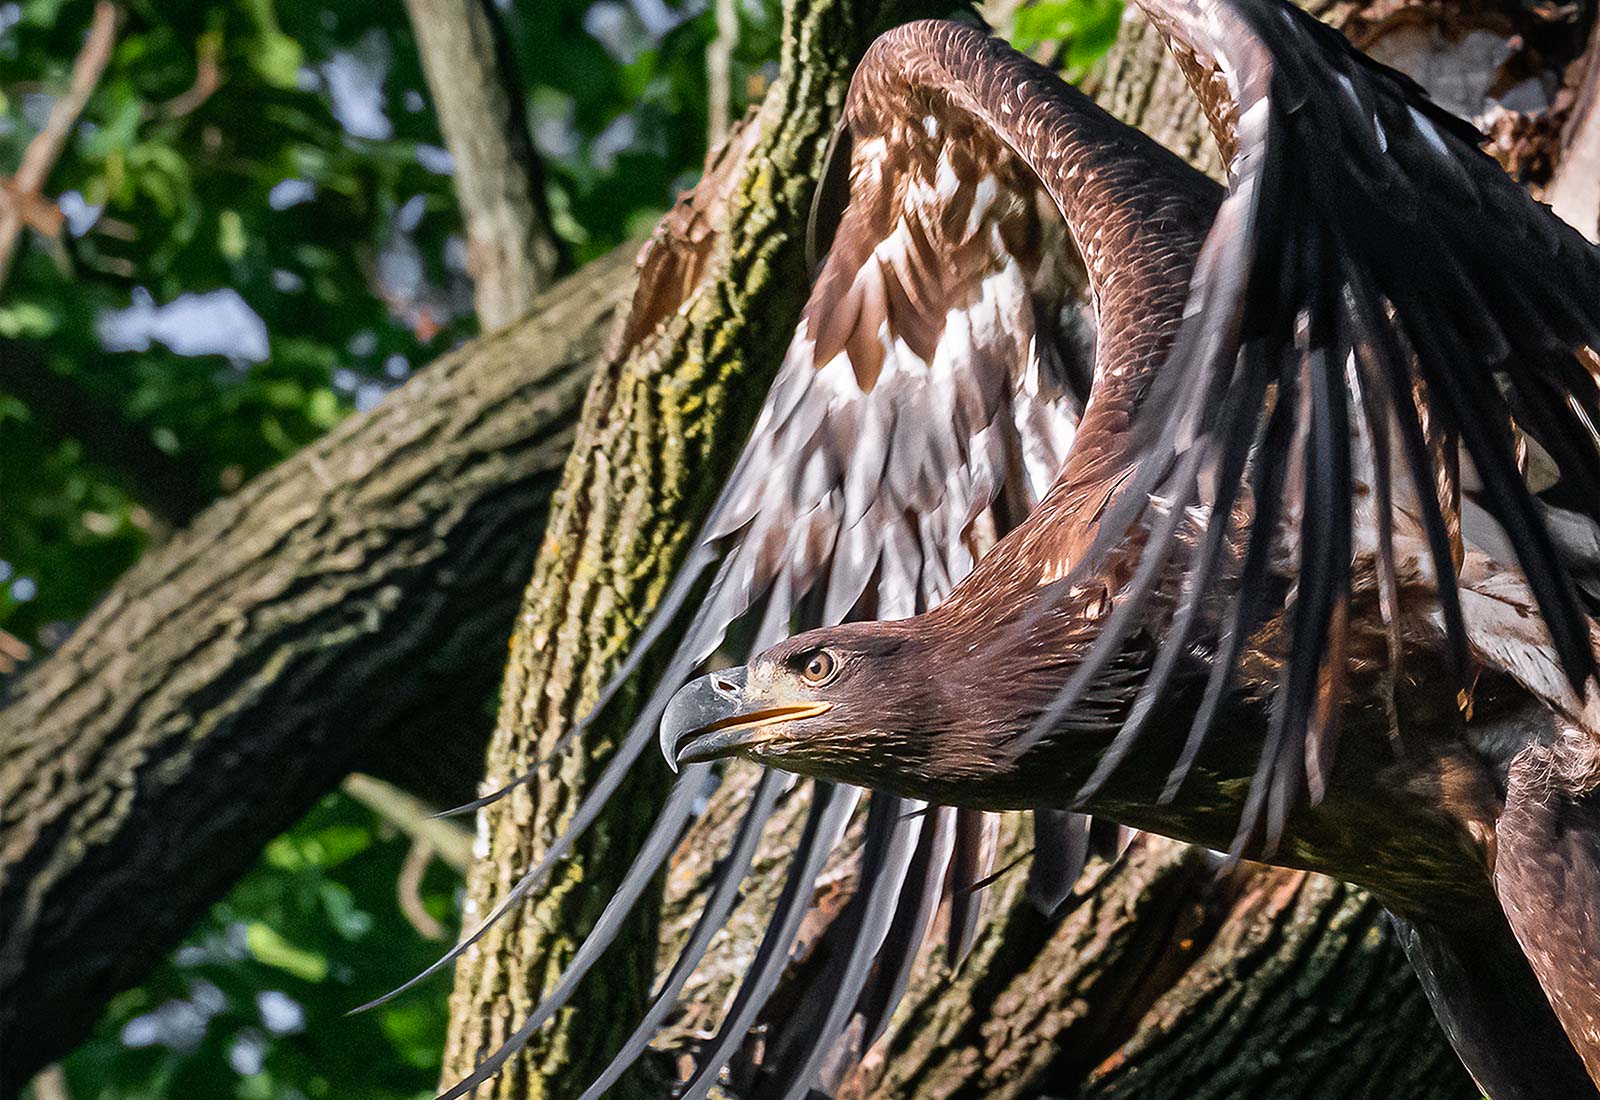 Juvenile Eagle in flight